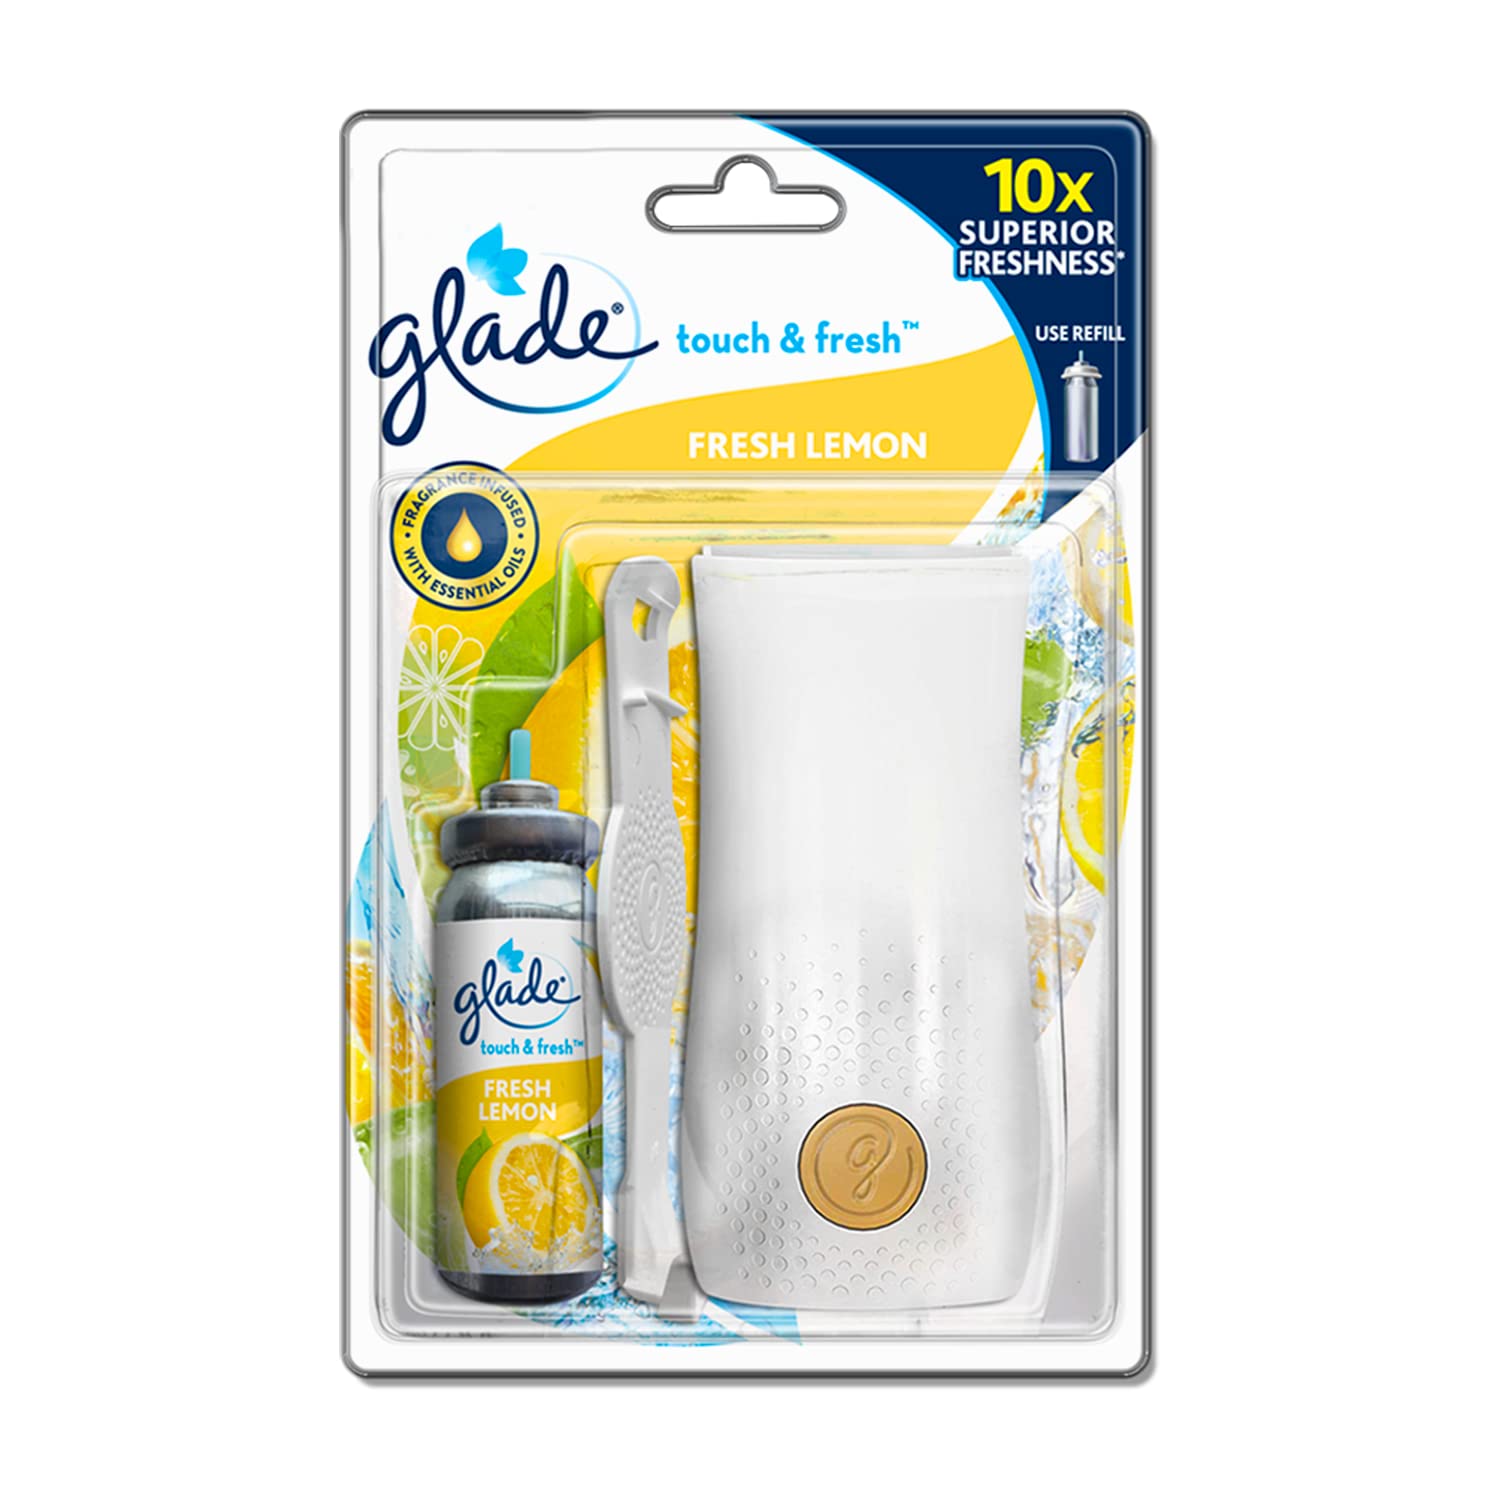 Glade Touch & Fresh Aerosol Air Freshener for Bathroom, Lemon Fresh | Fragrance Dispenser & 12ml Refill